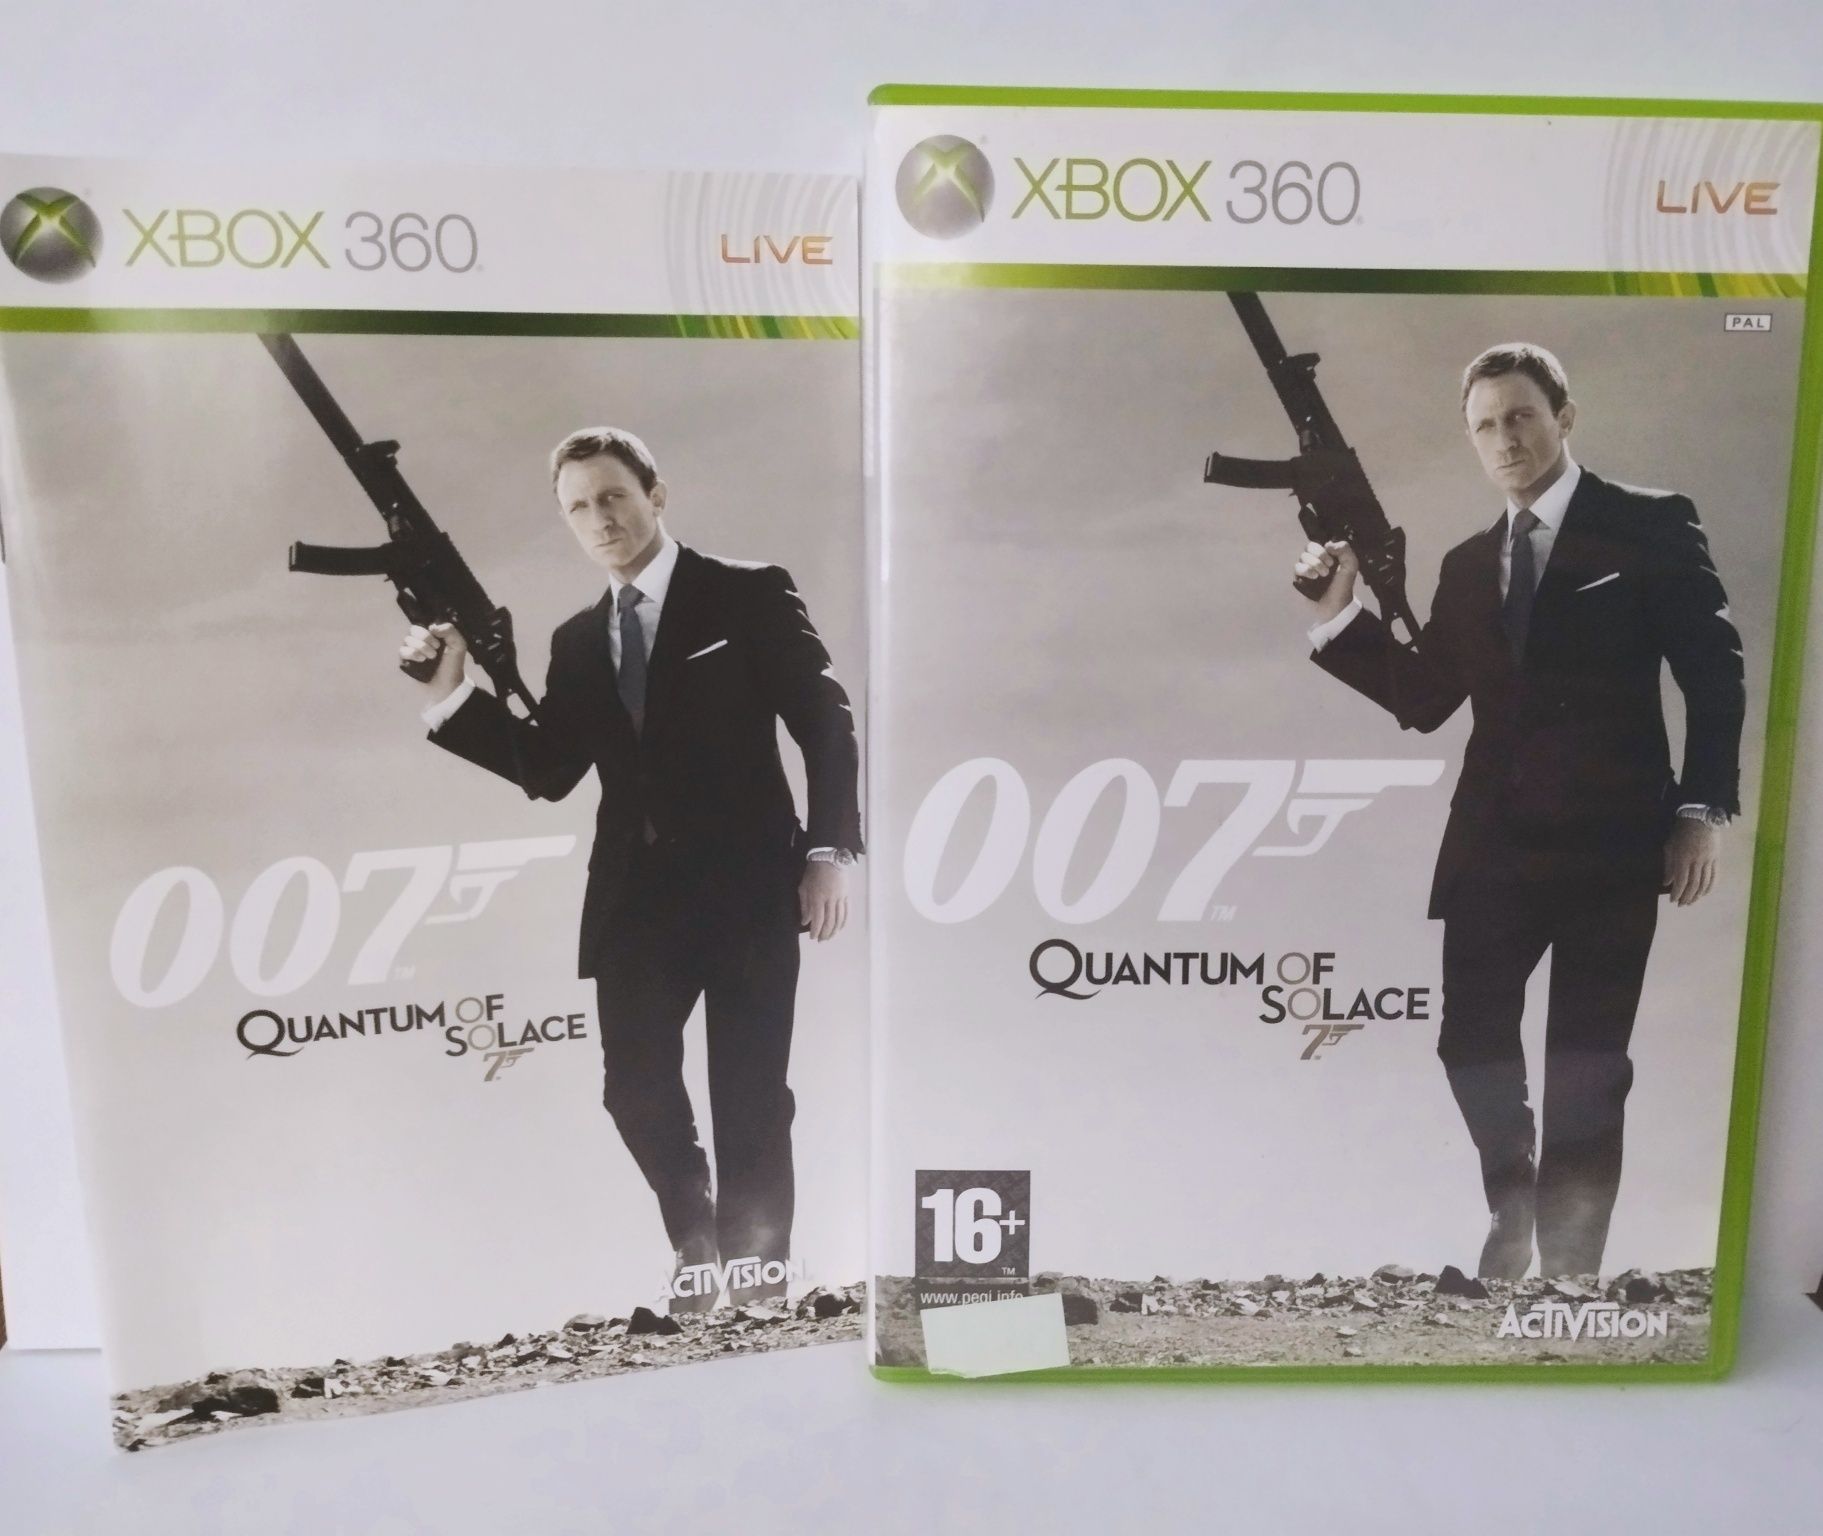 007 Quantum of solance Xbox 360